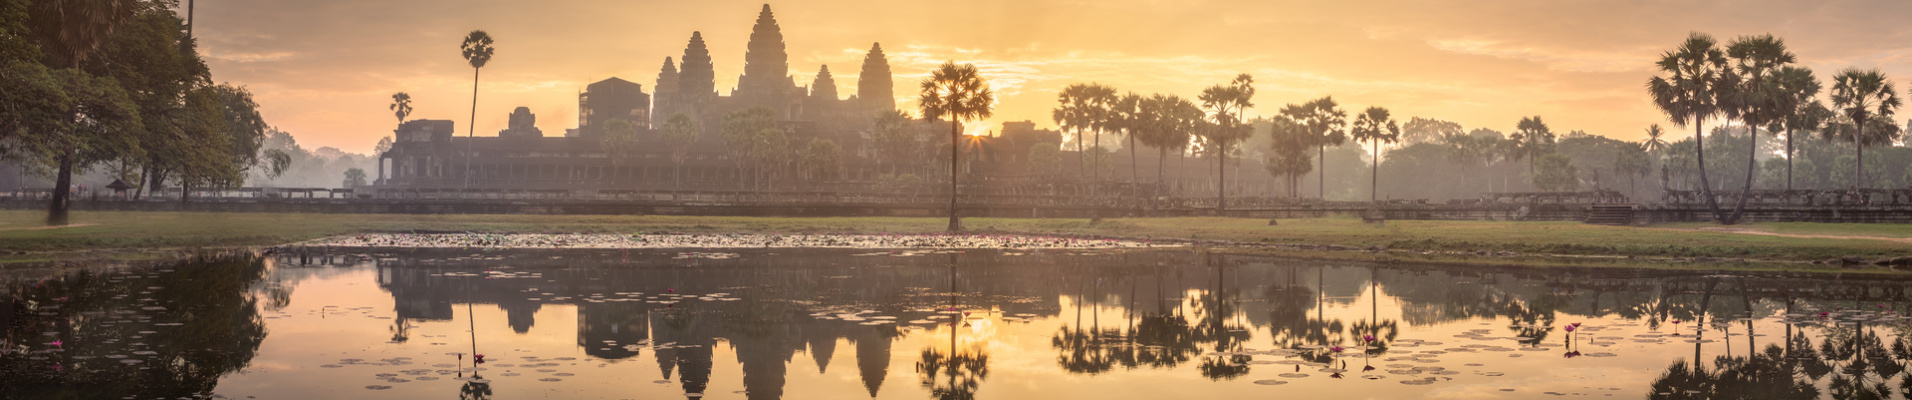 angkor wat temple cambodge